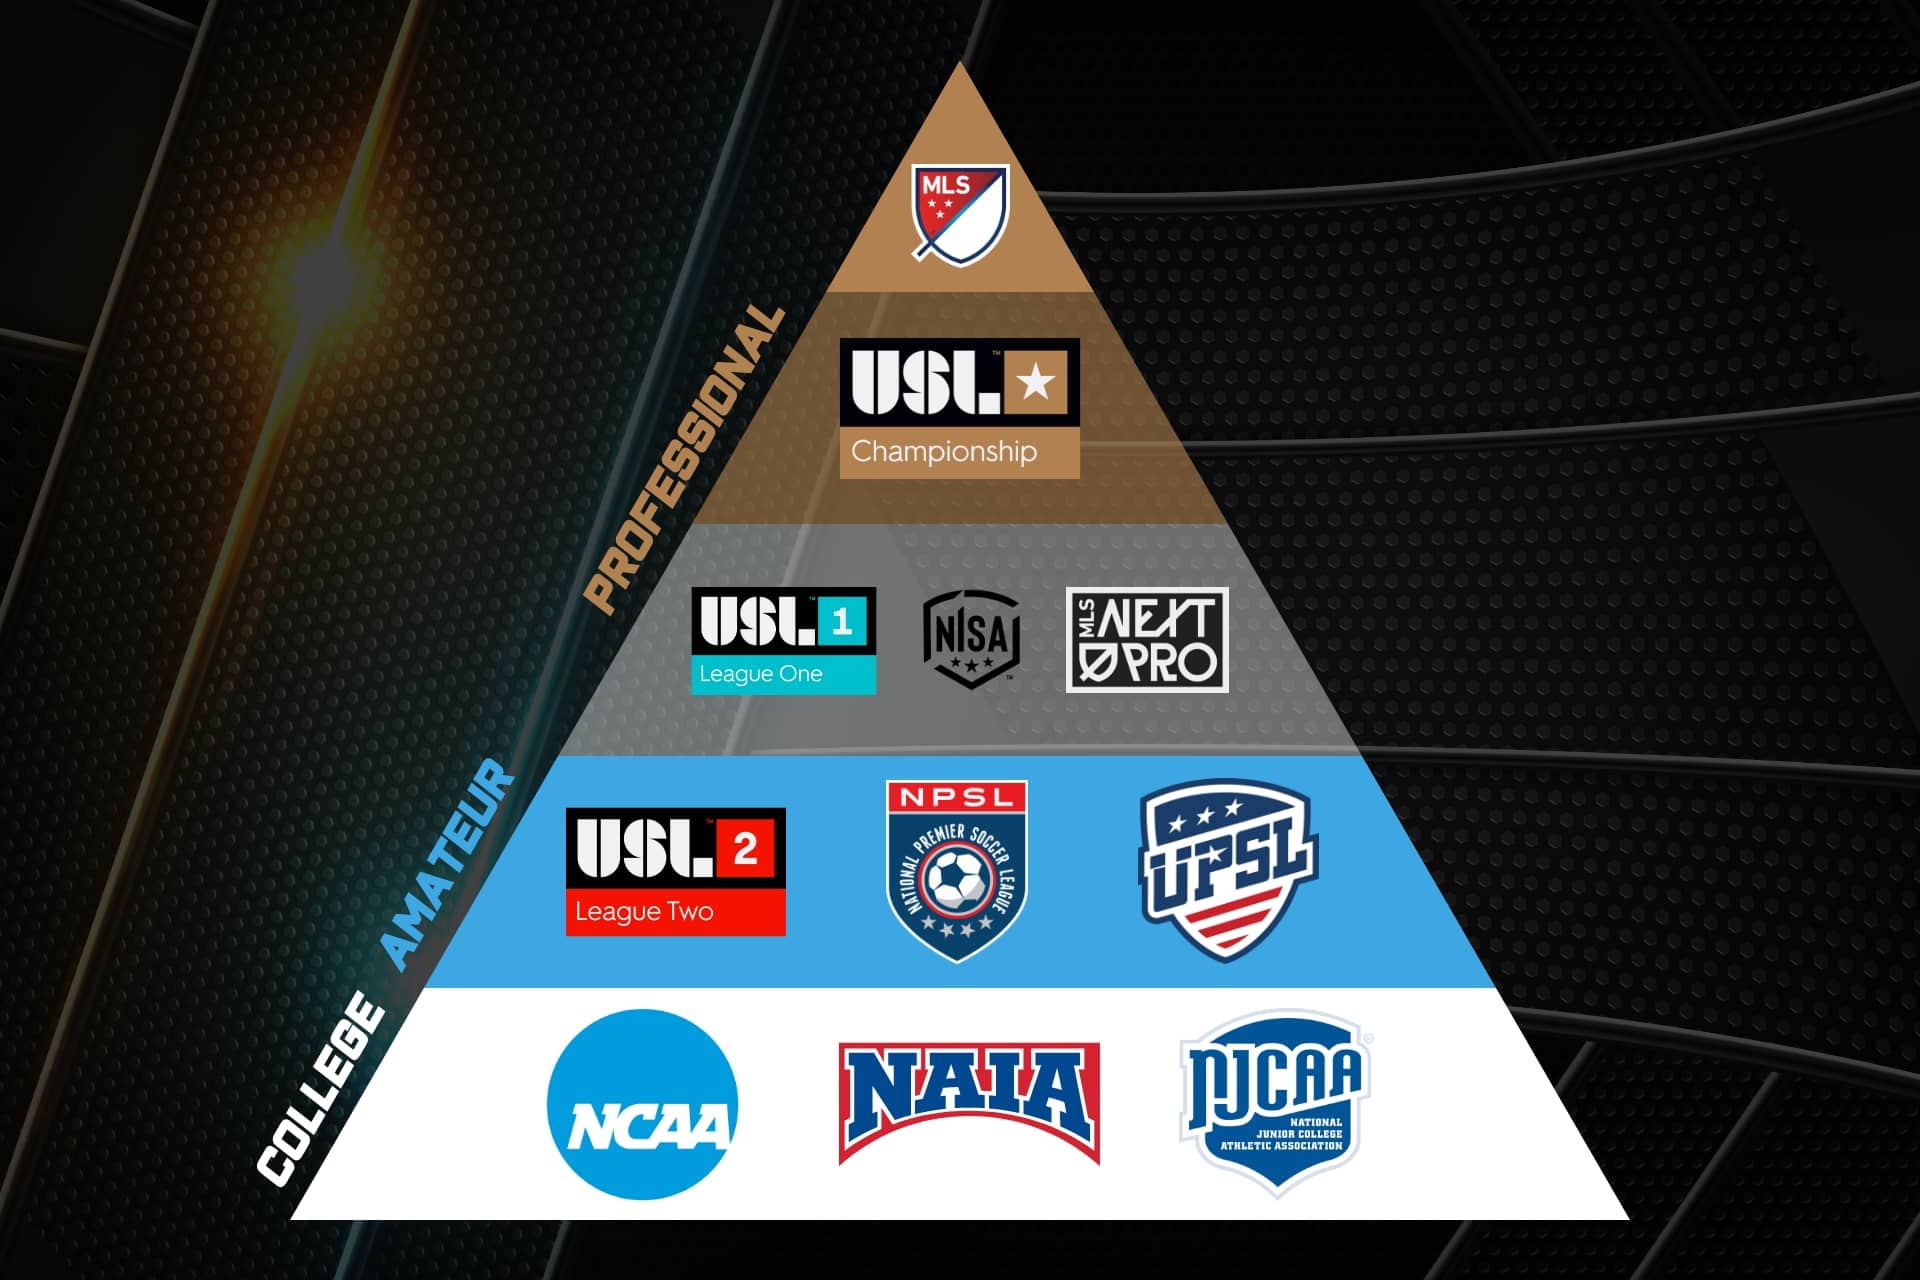 amerikai foci piramis